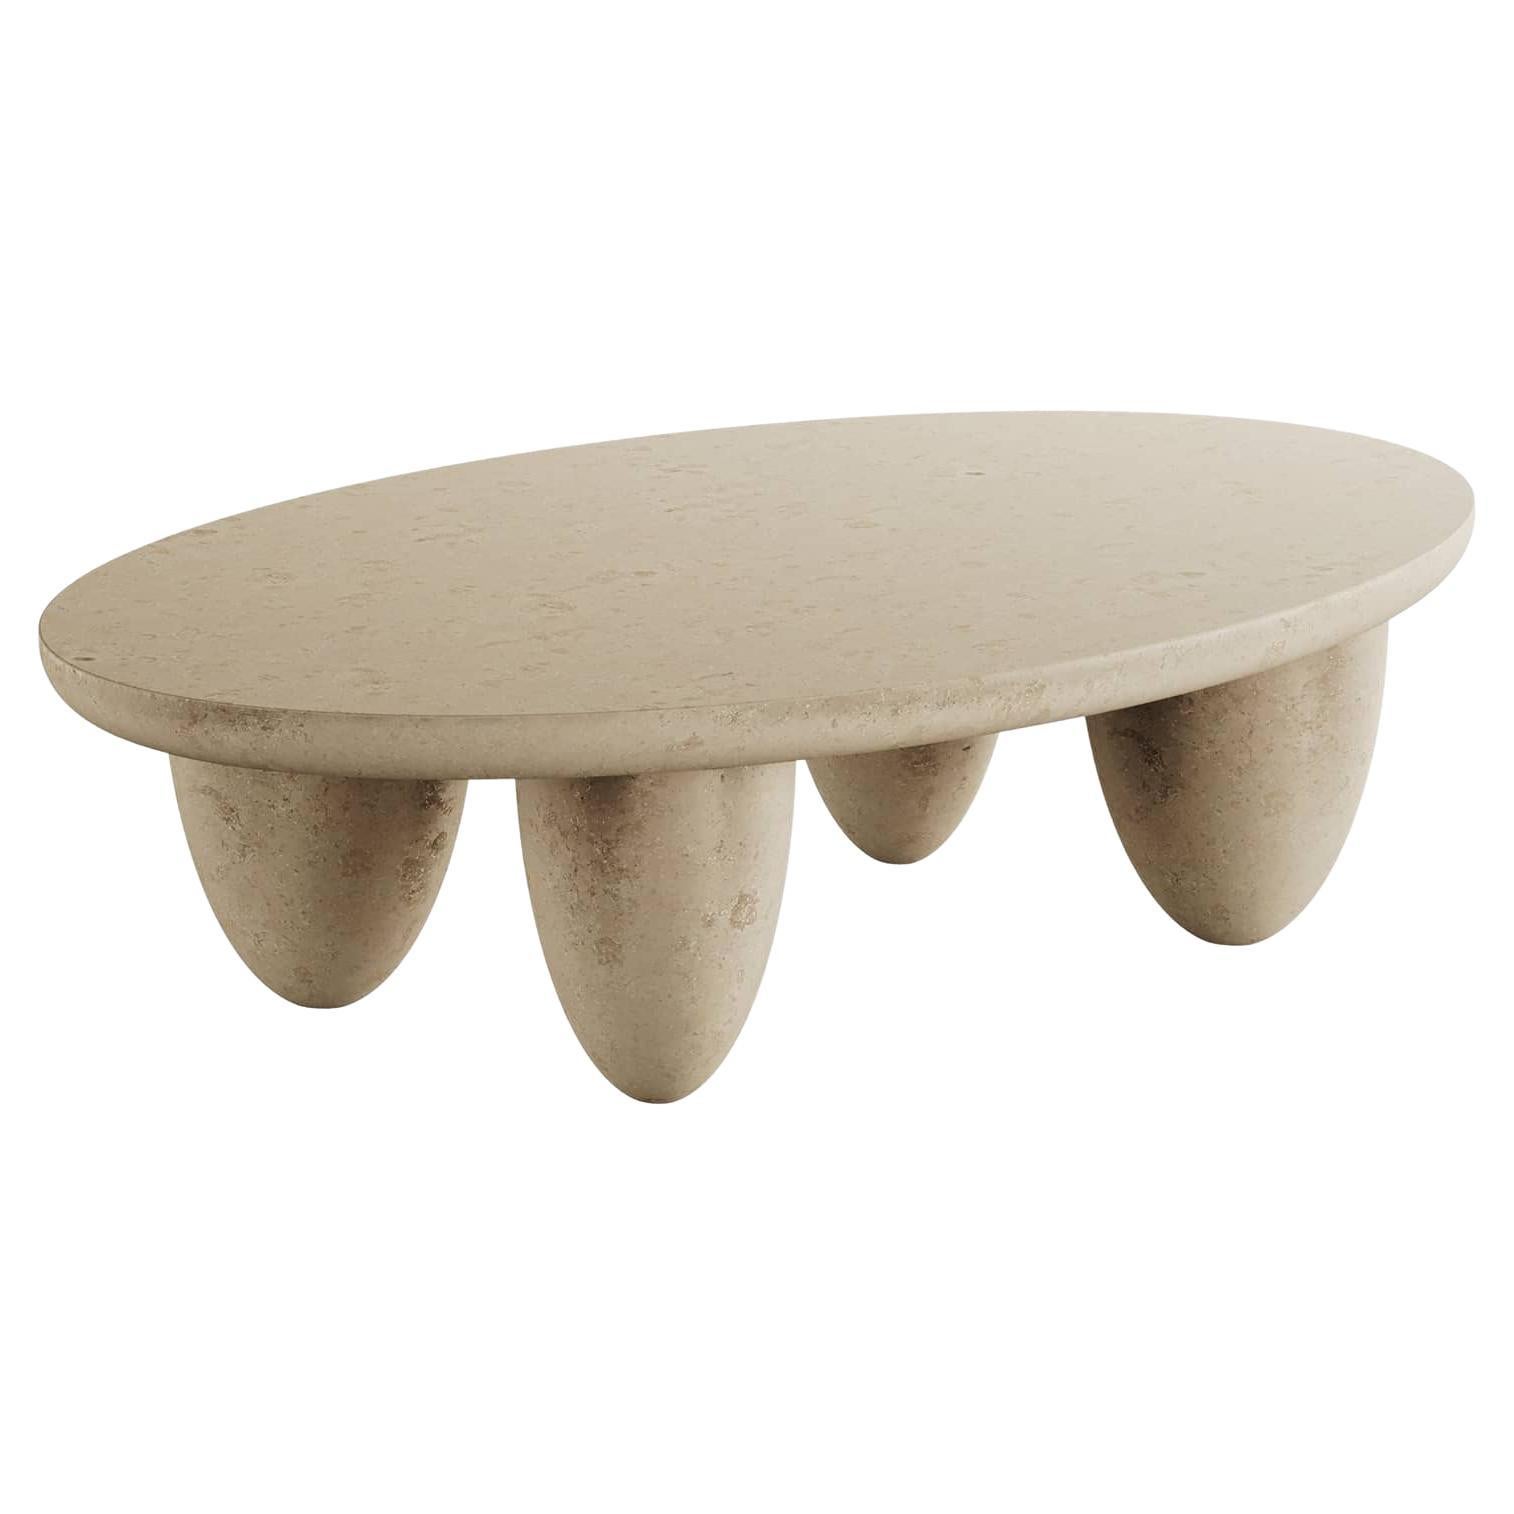 Table basse ovale contemporaine minimaliste pour l'extérieur et l'intérieur Beige naturel pierre calcaire en vente